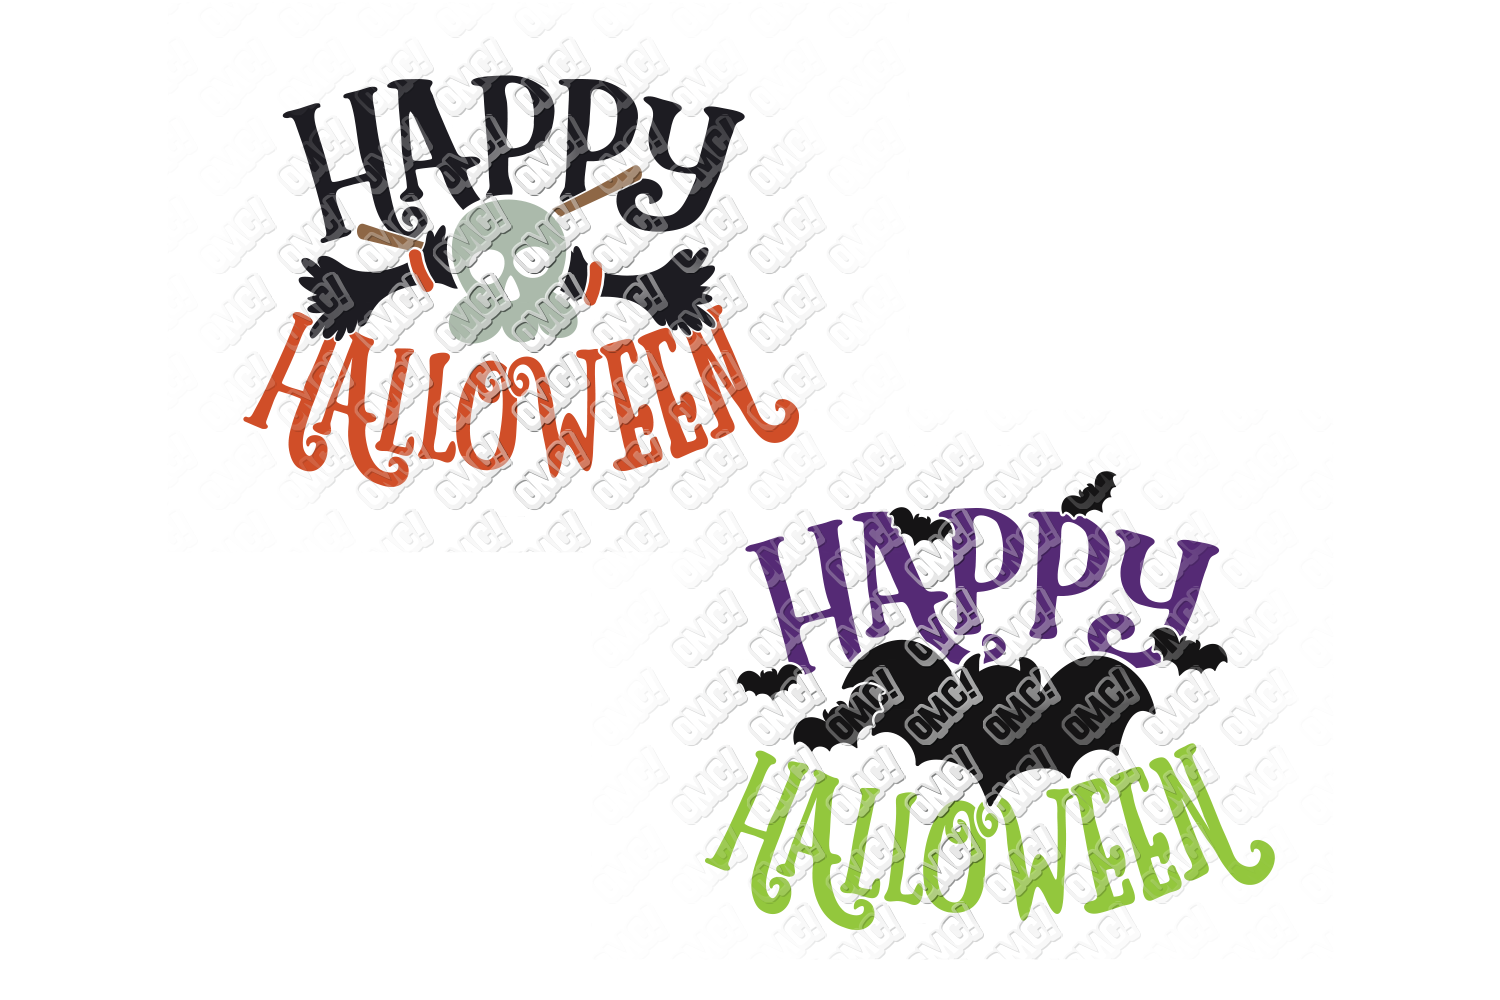 Download Happy Halloween SVG Bundle in SVG, DXF, PNG, EPS, JPEG